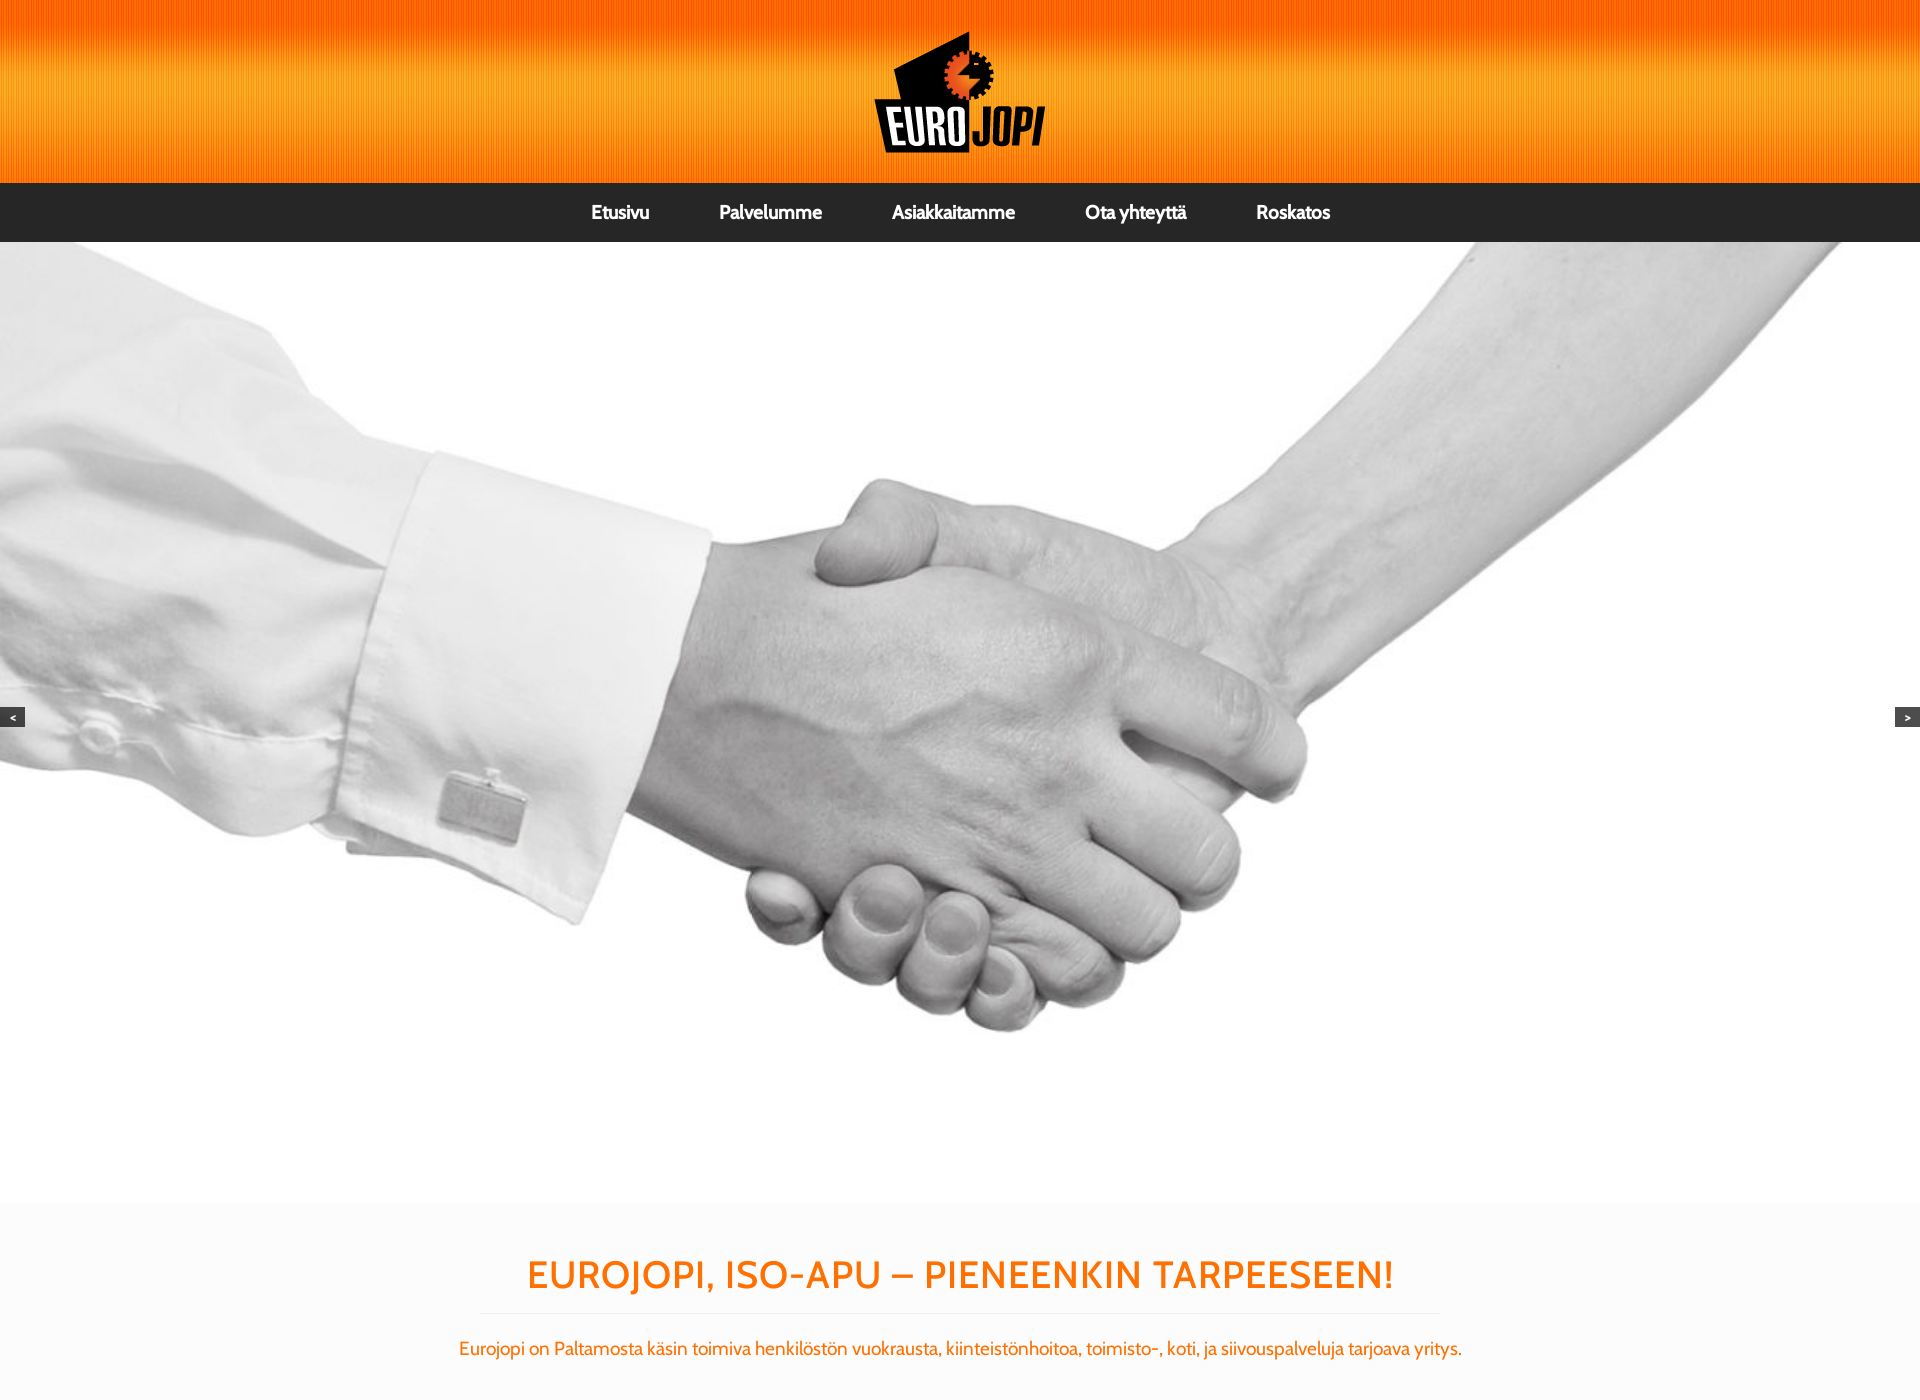 Screenshot for roskatos.fi